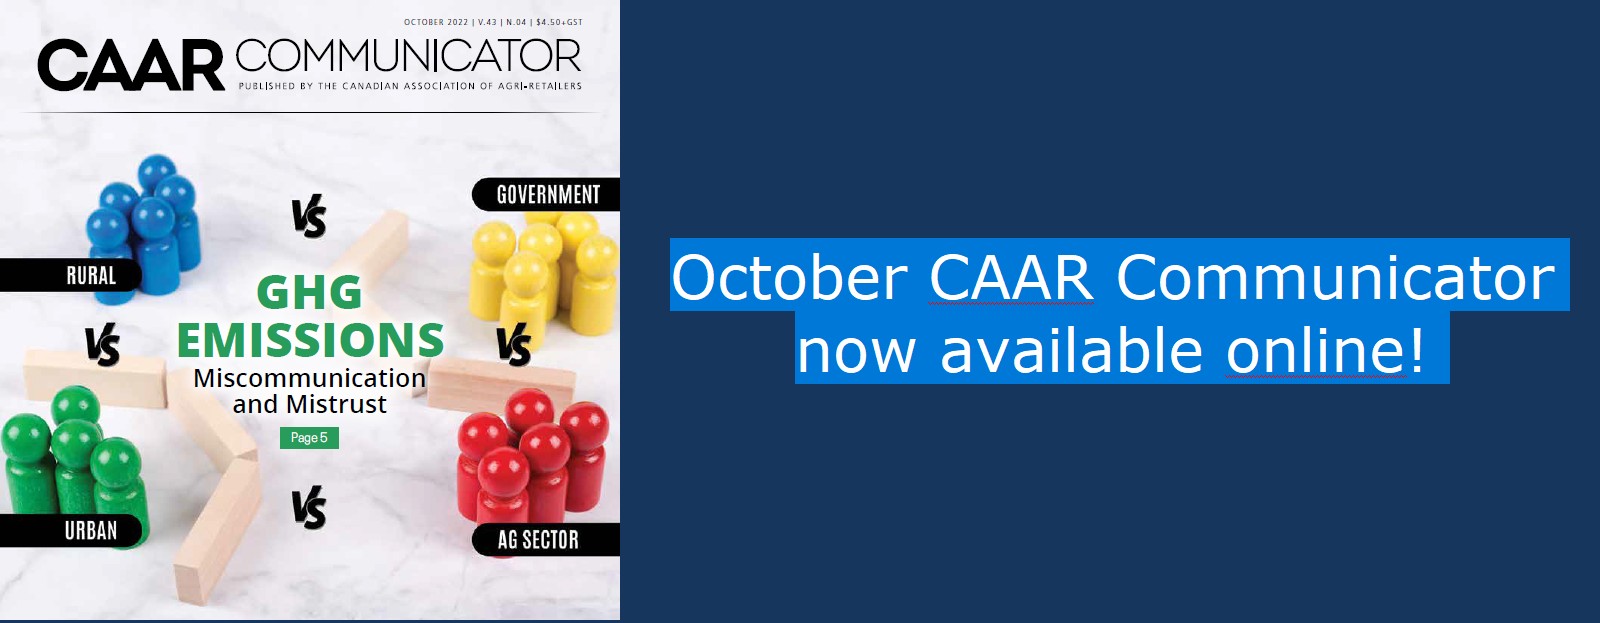 Banner for CAAR Communicator October 2022 issue